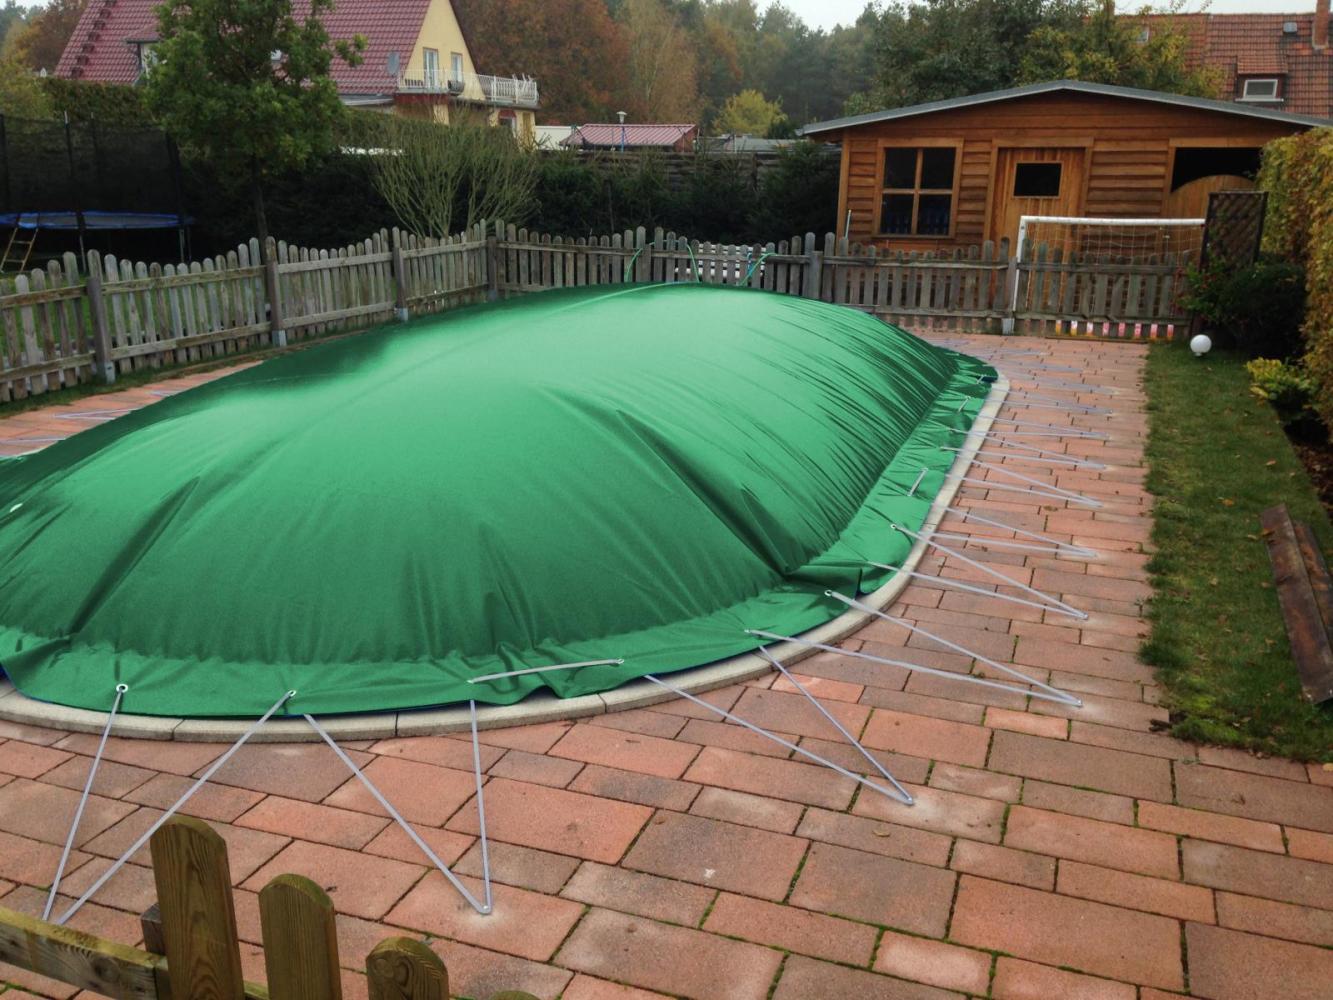 aufblasbare Winterplane für ovale Pools 7,00 x 4,20 cm Grün Bild 1